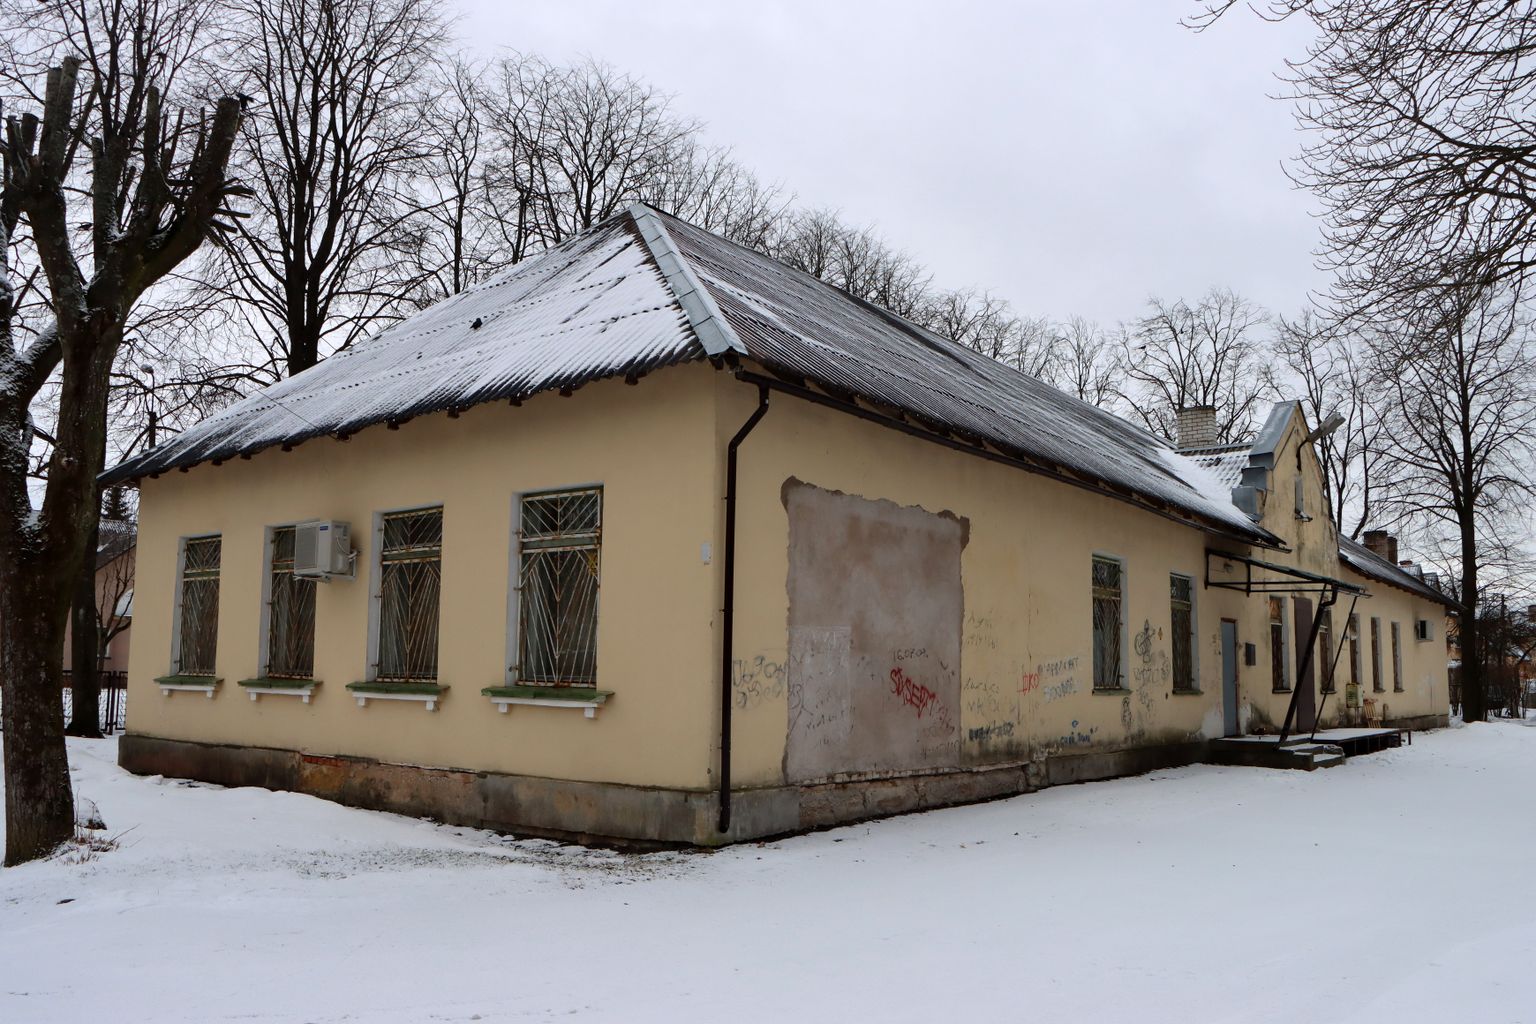 Обанкротившаяся швейная фирма "Lorinda" работала в бывшем здании детского сада на улице Пярна в Кохтла-Ярве.